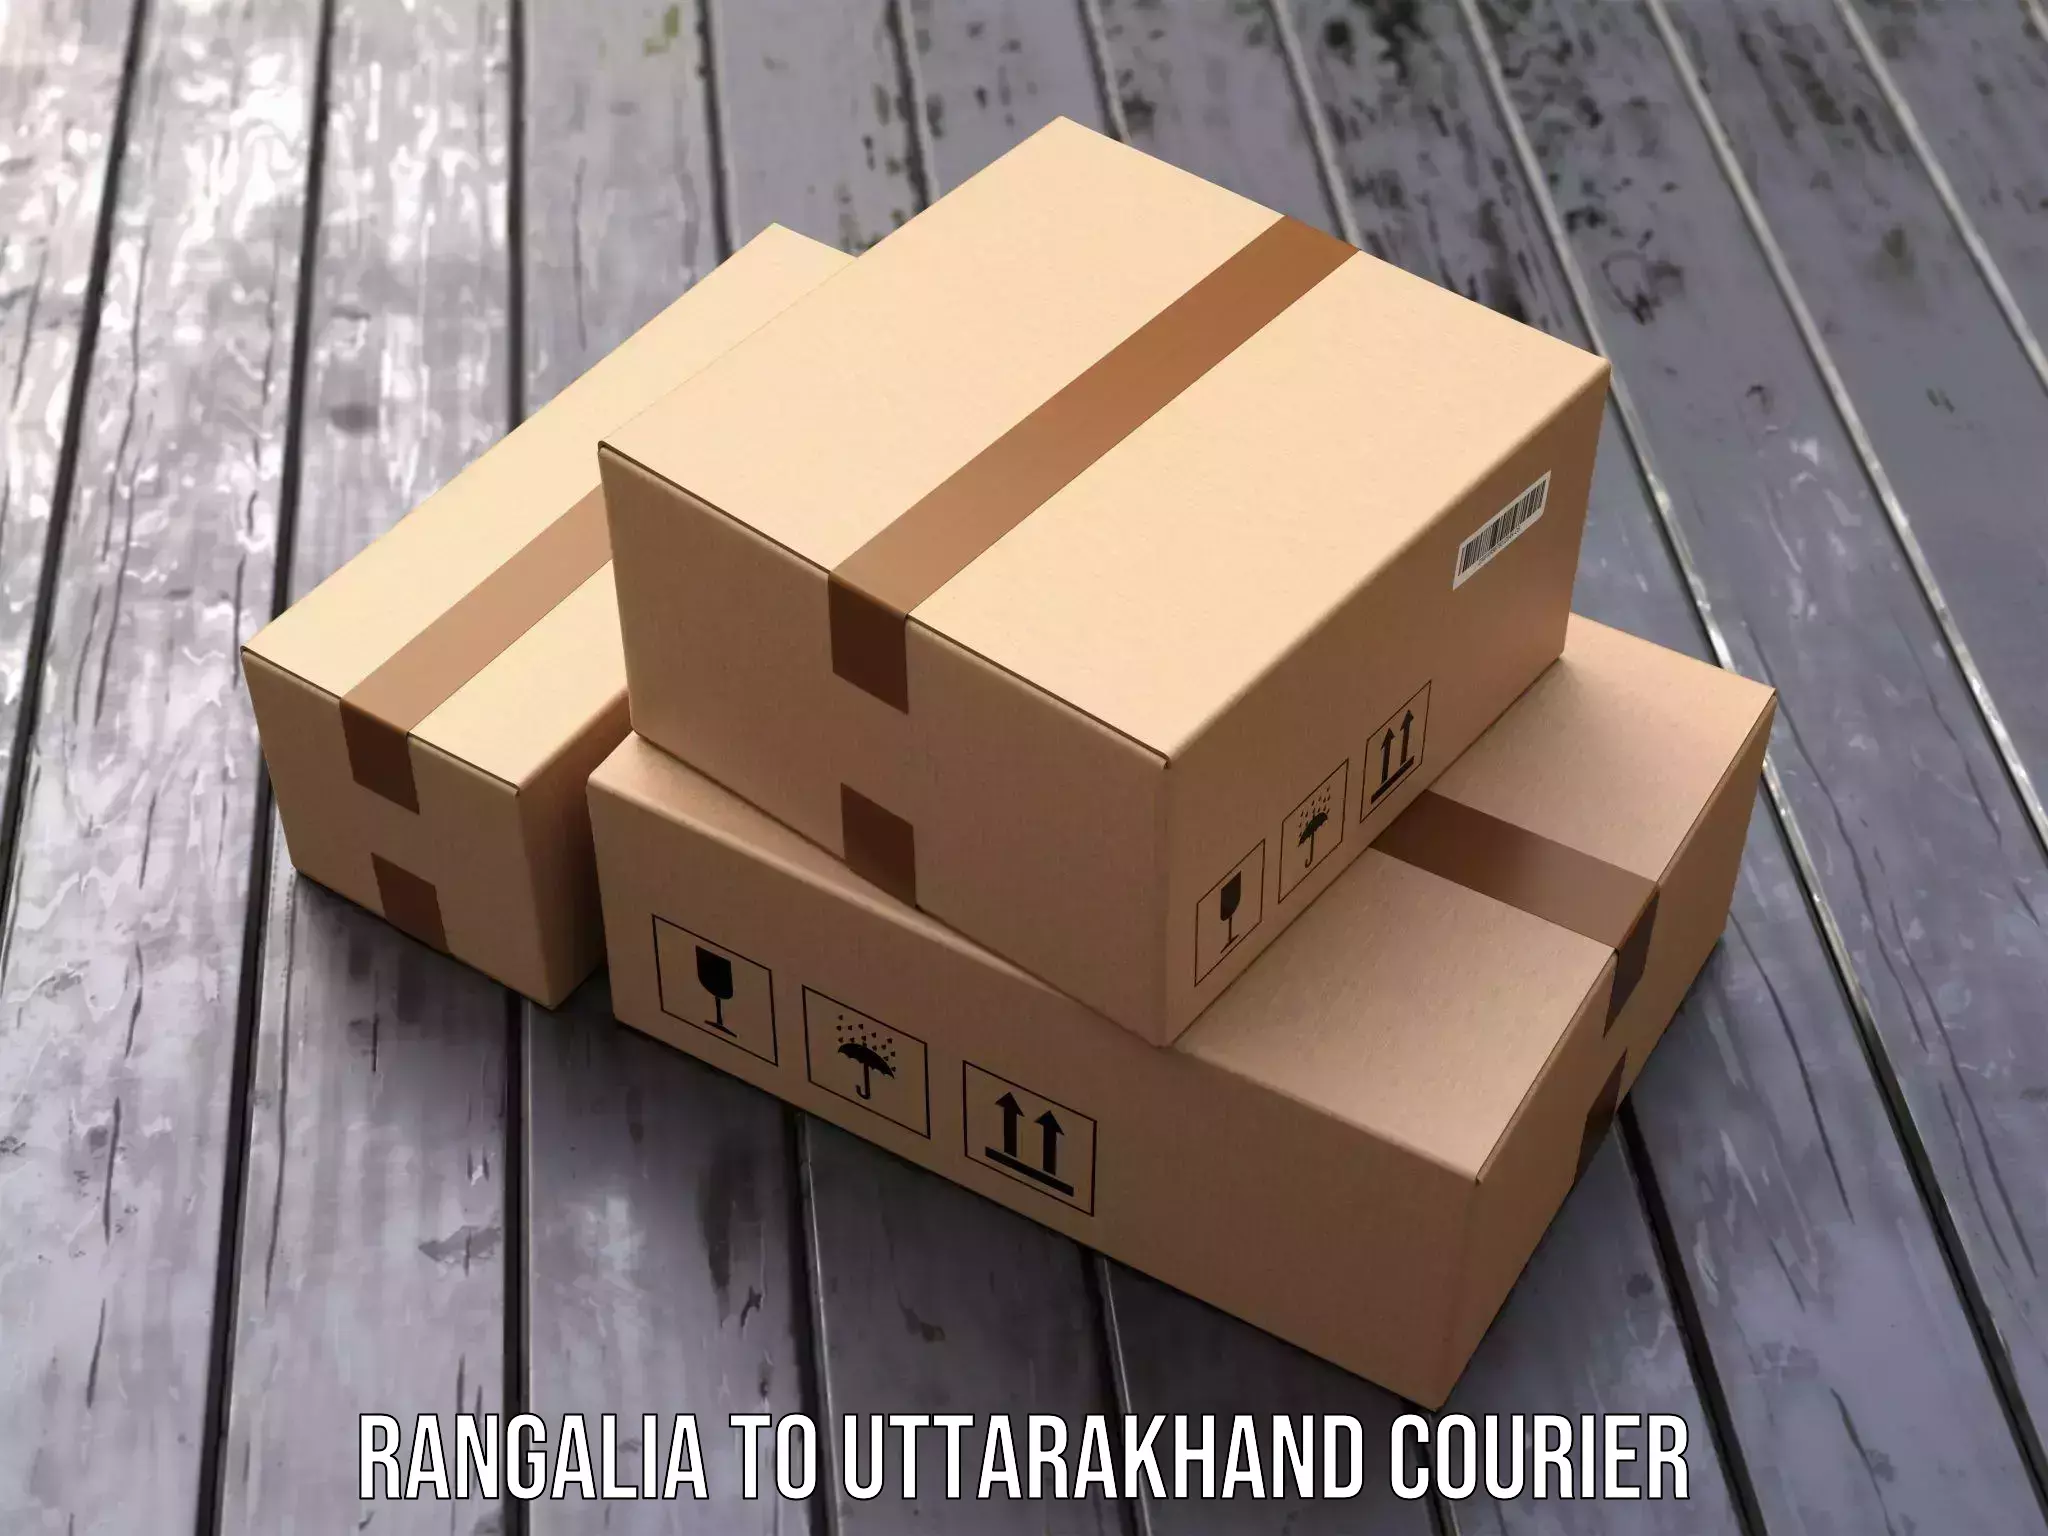 Optimized shipping routes Rangalia to Uttarakhand